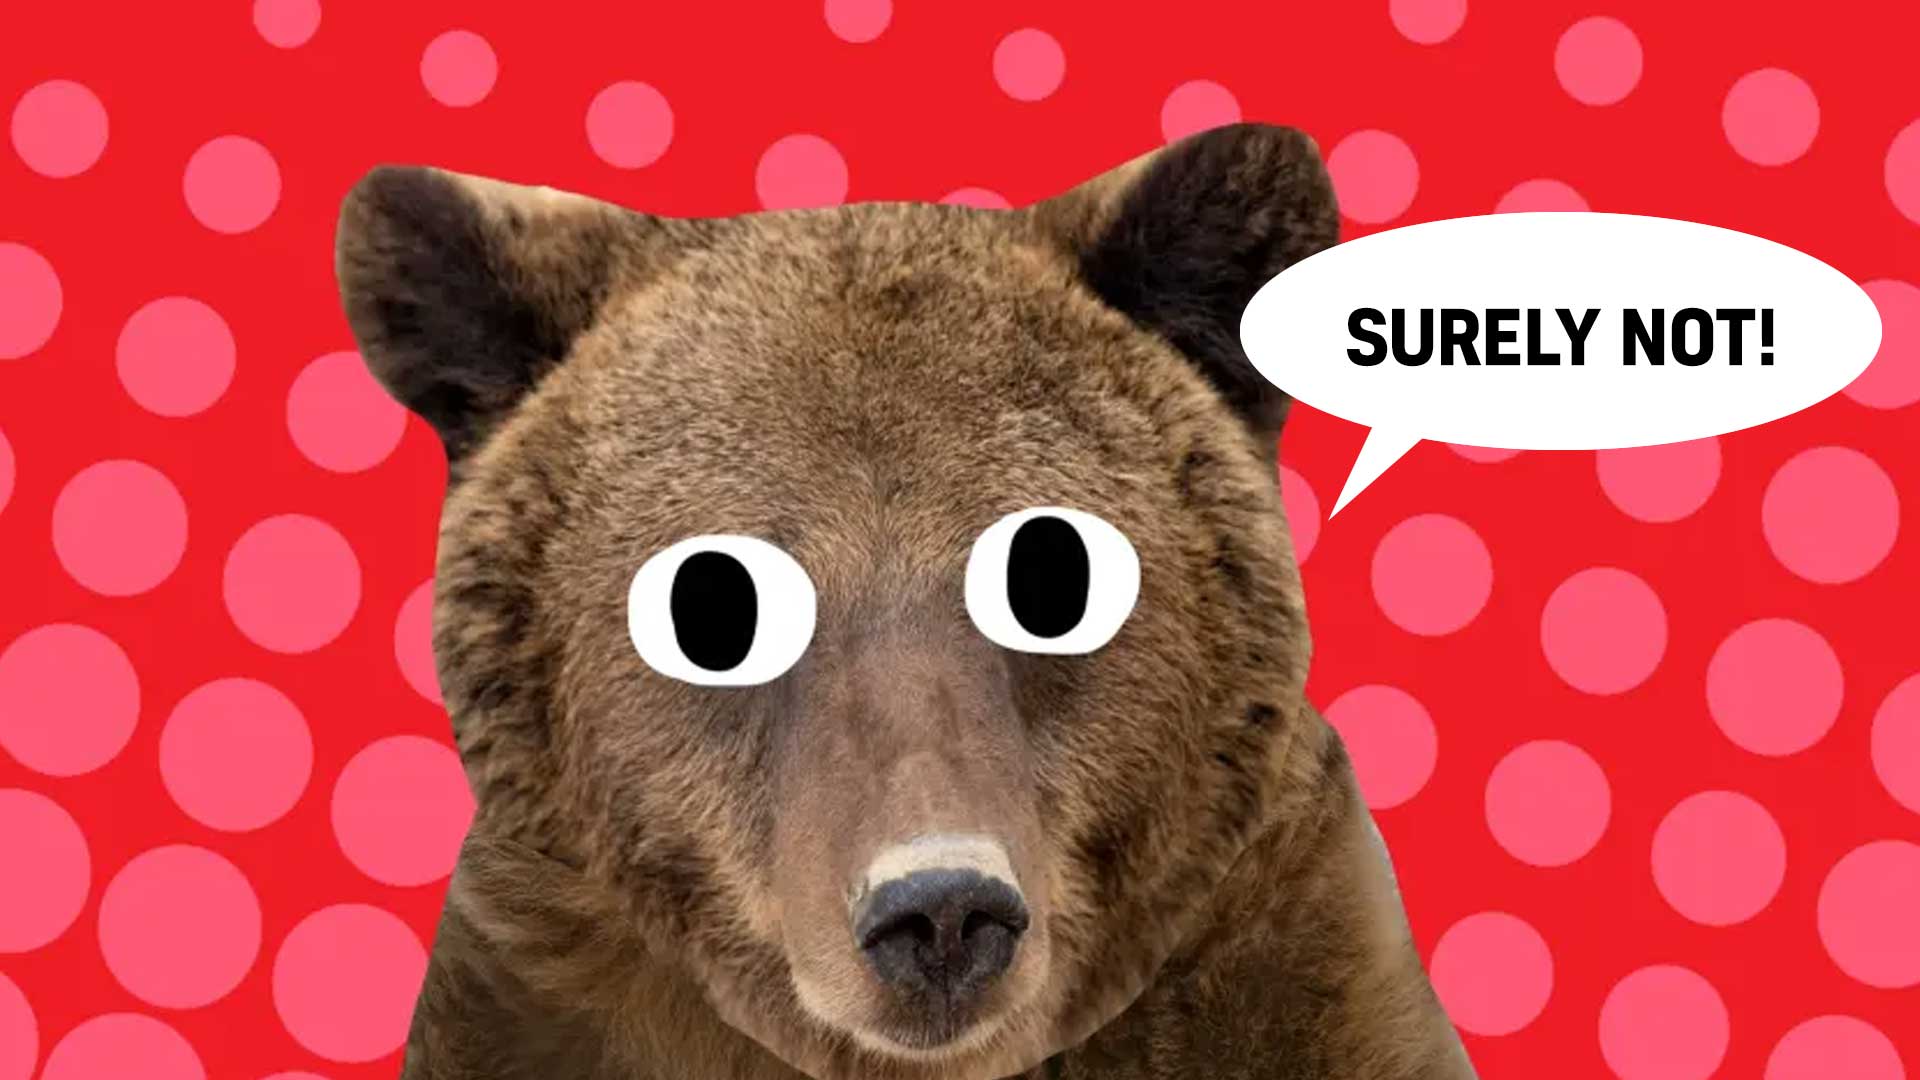 A bear 